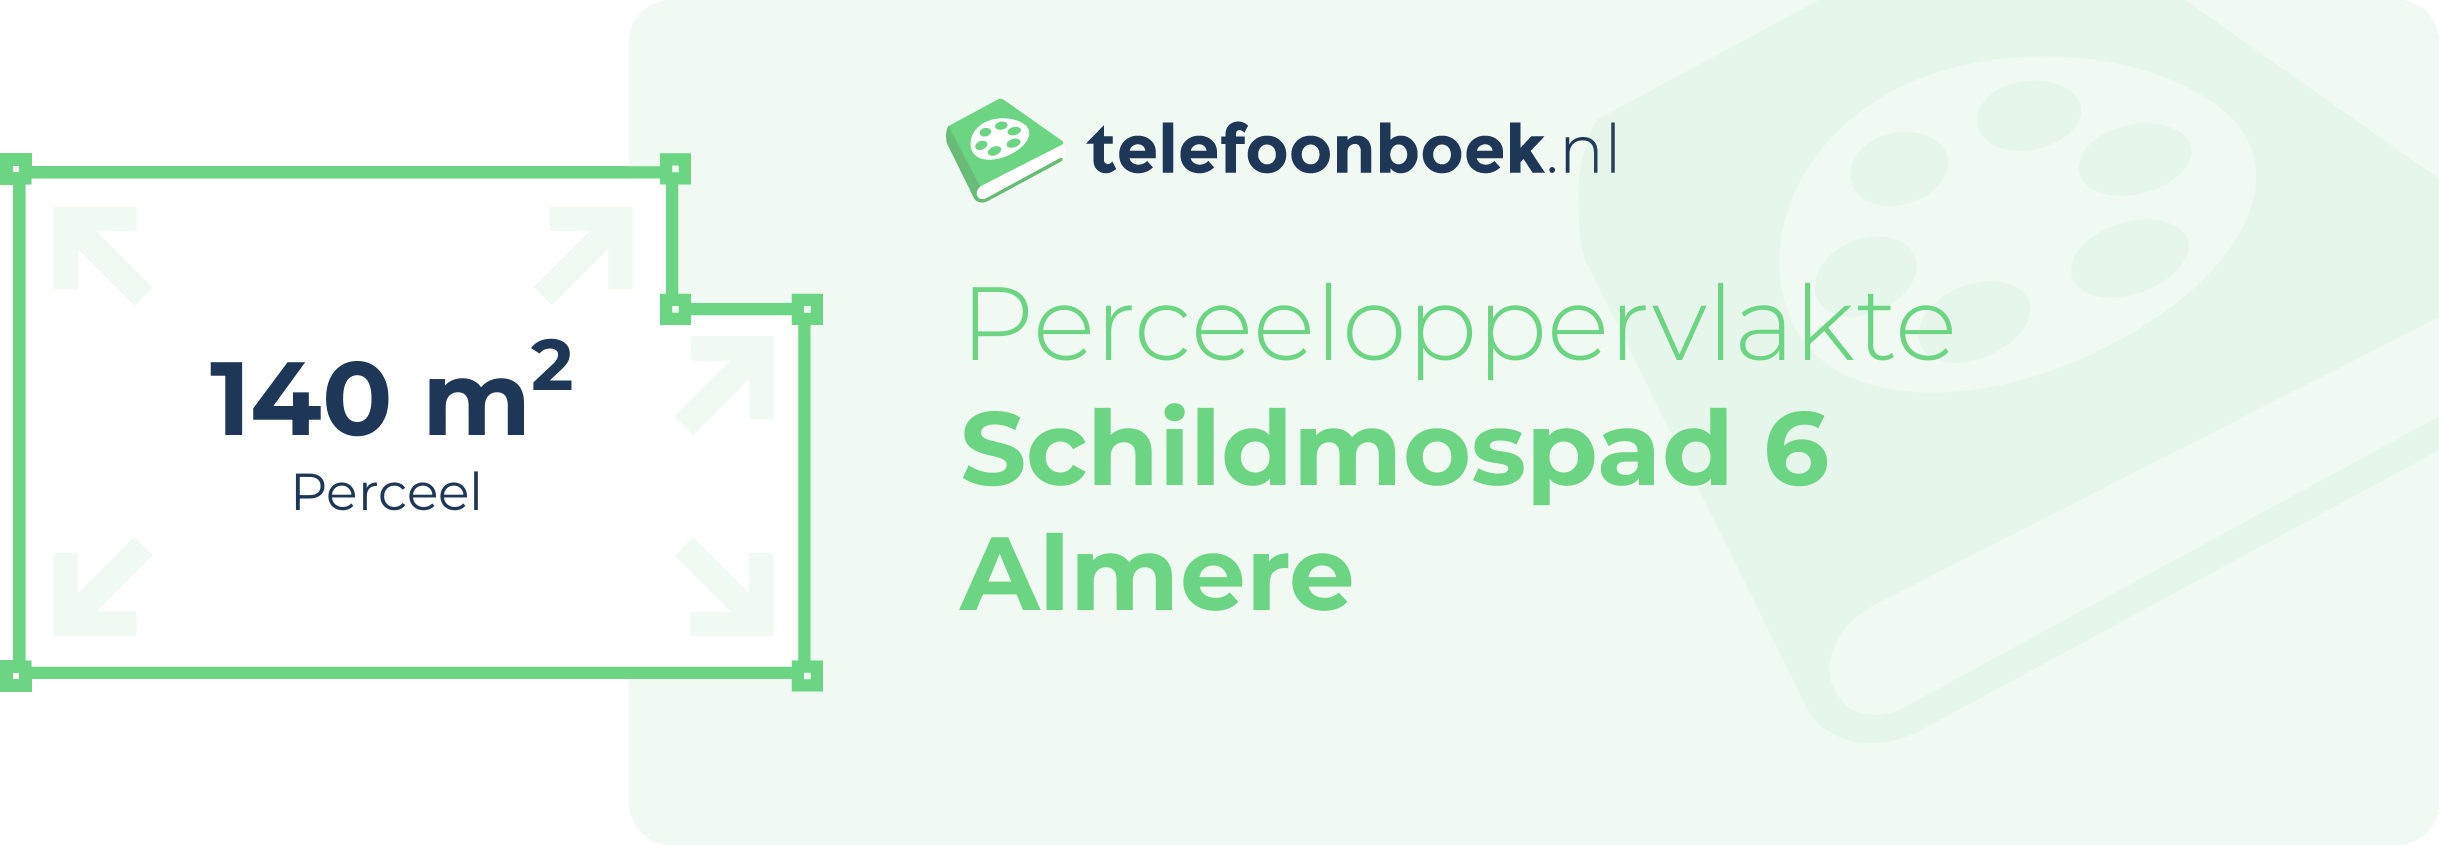 Perceeloppervlakte Schildmospad 6 Almere